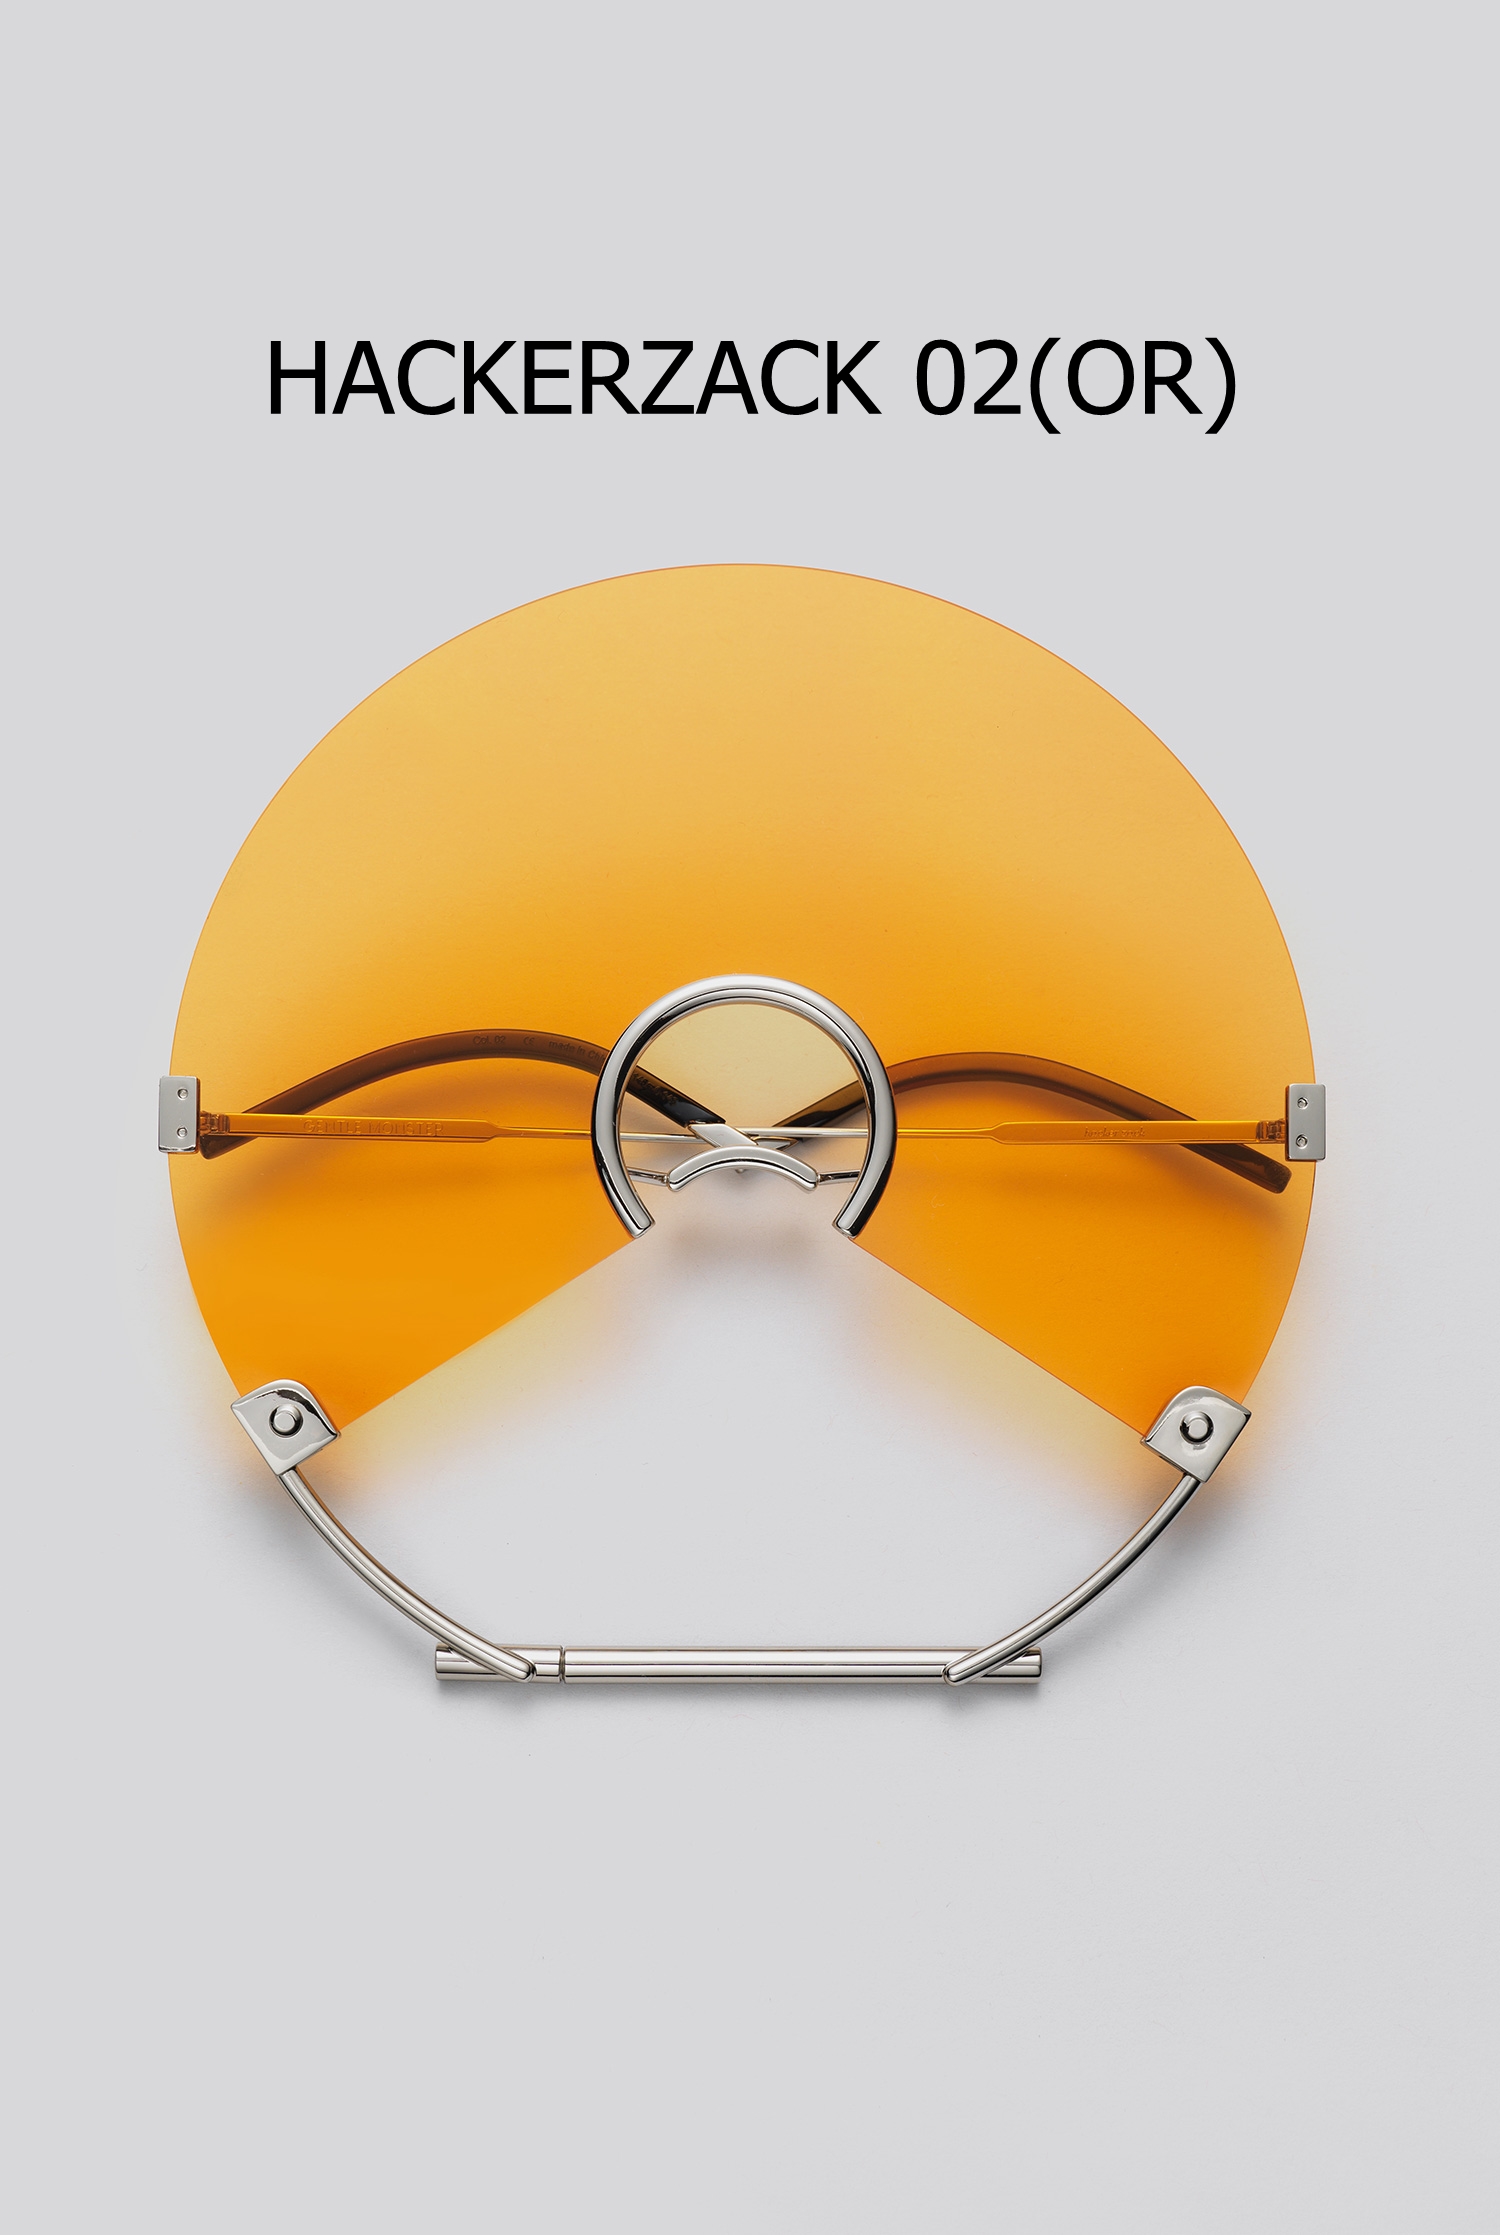 HACKERZACK 02(OR)